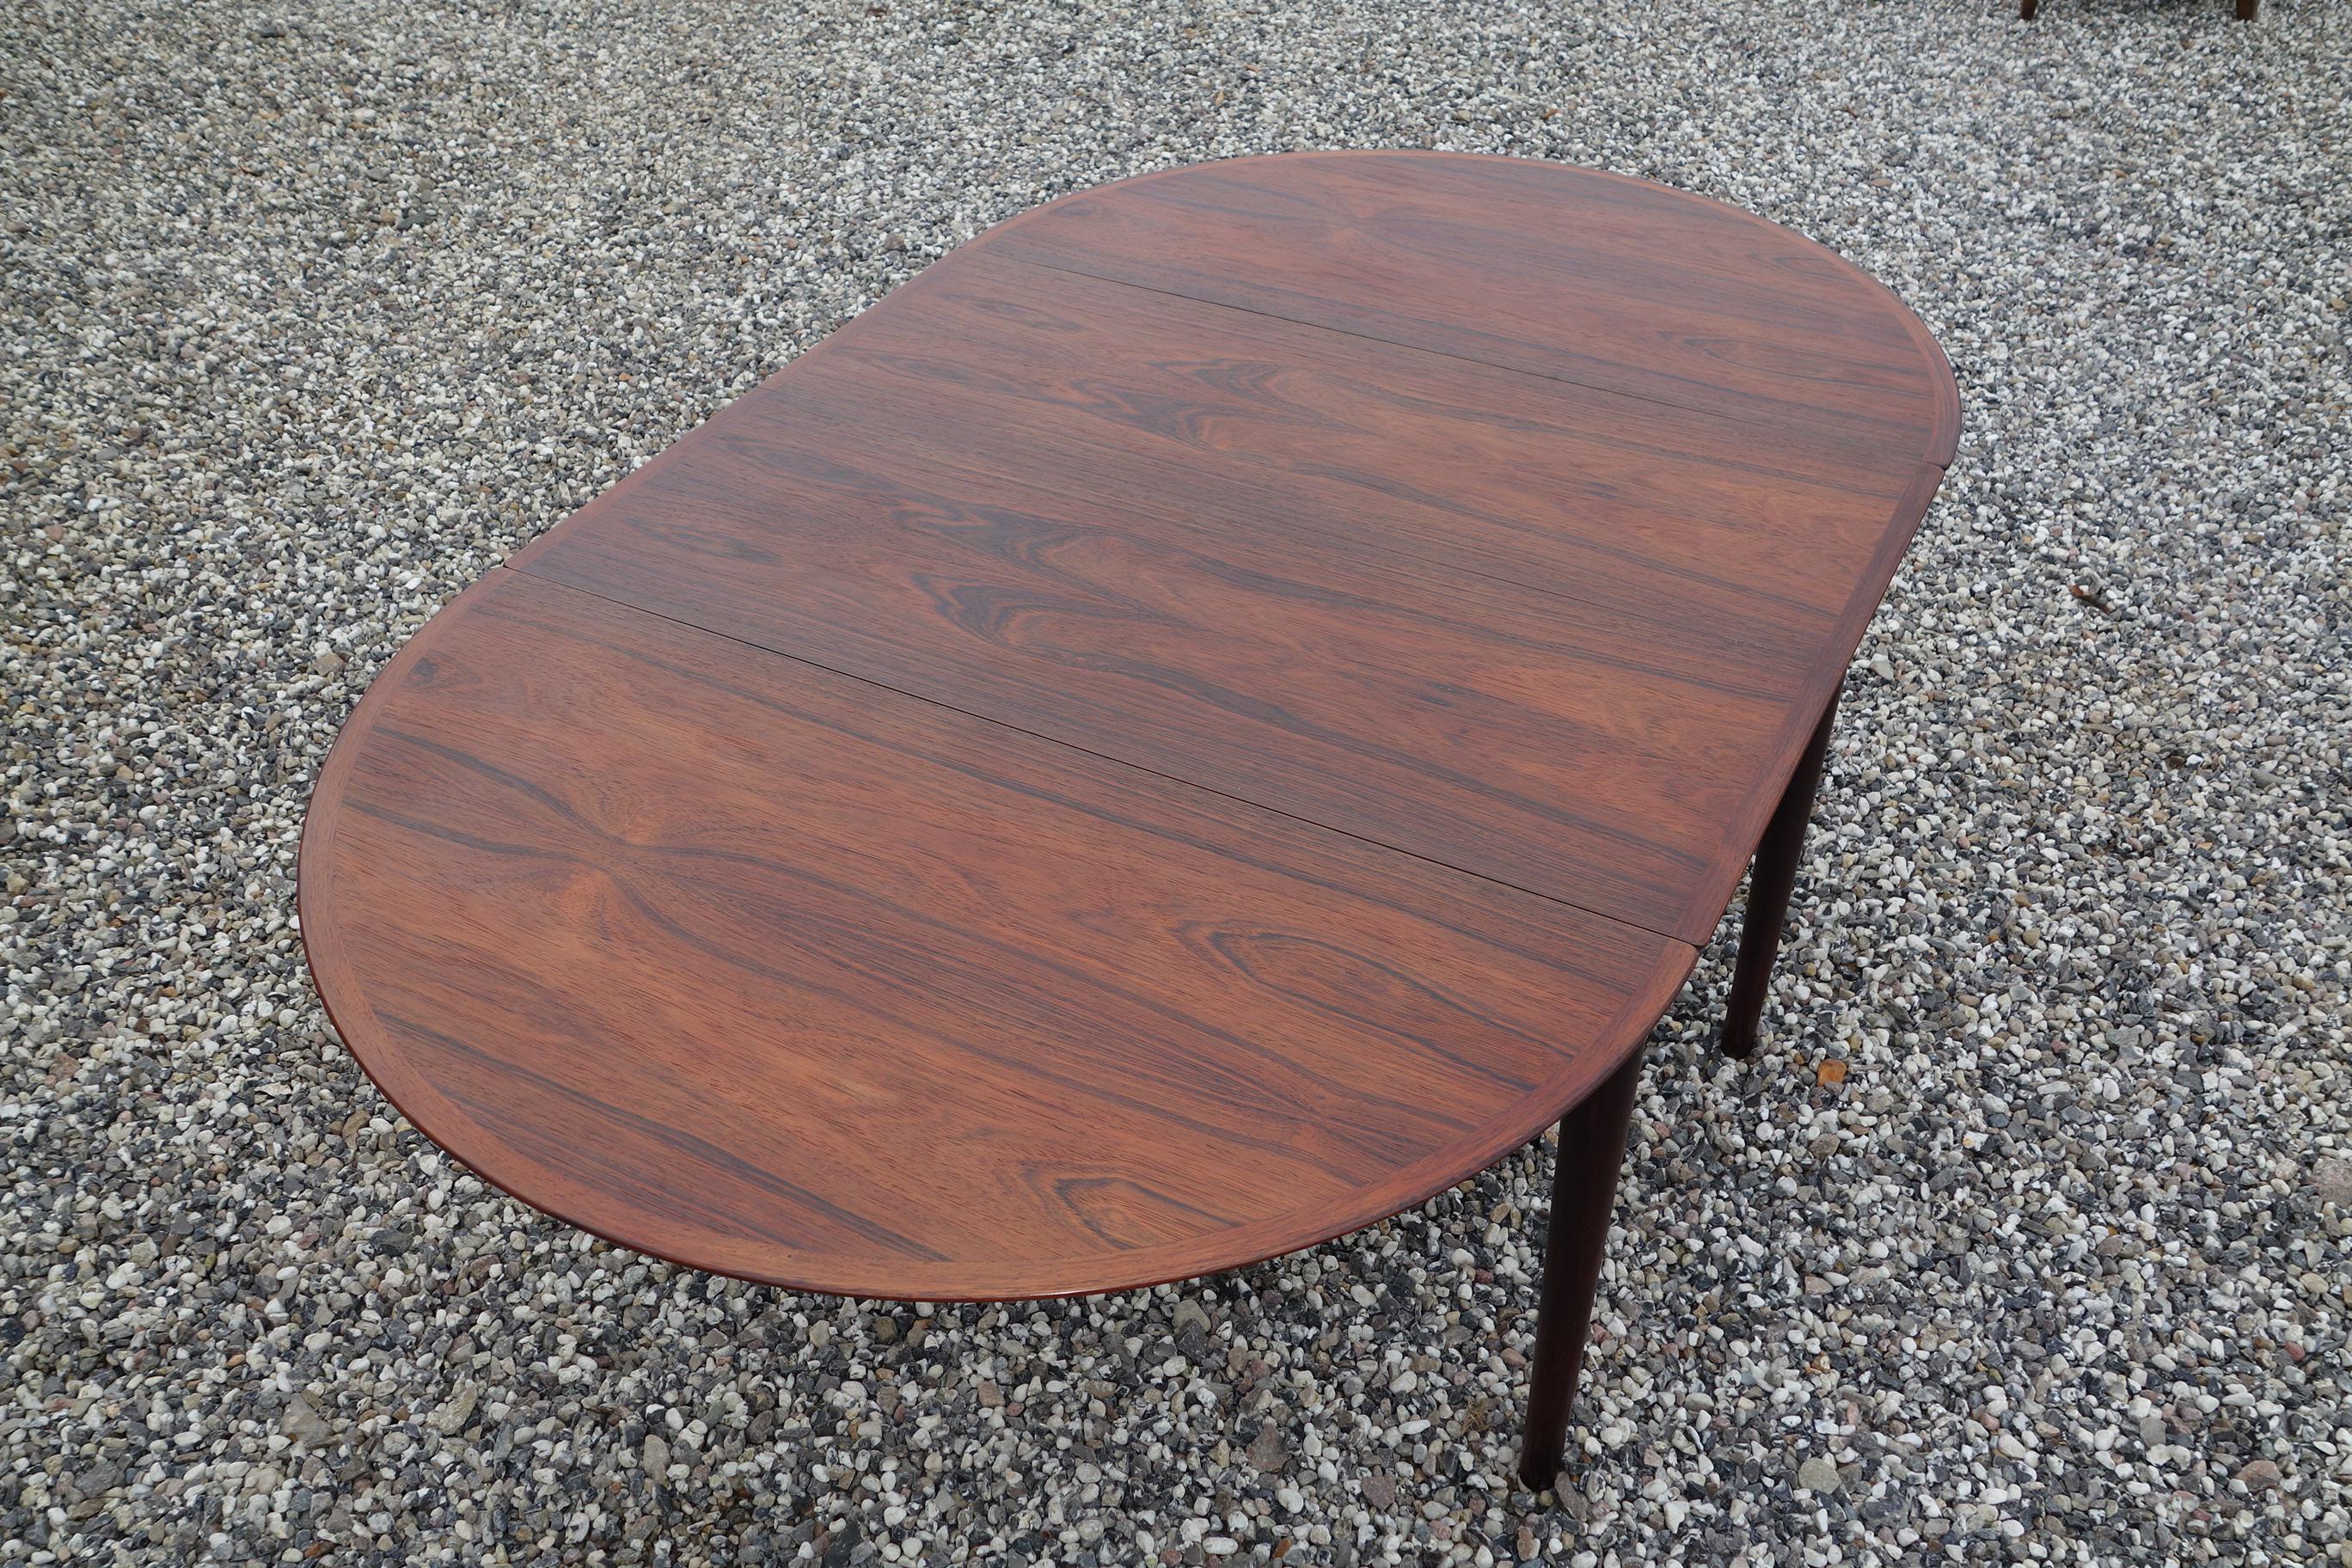 Scandinavian Modern Arne Vodder Drop Leaf Table in Rosewood Made by Sibast Furniture Model 227 For Sale